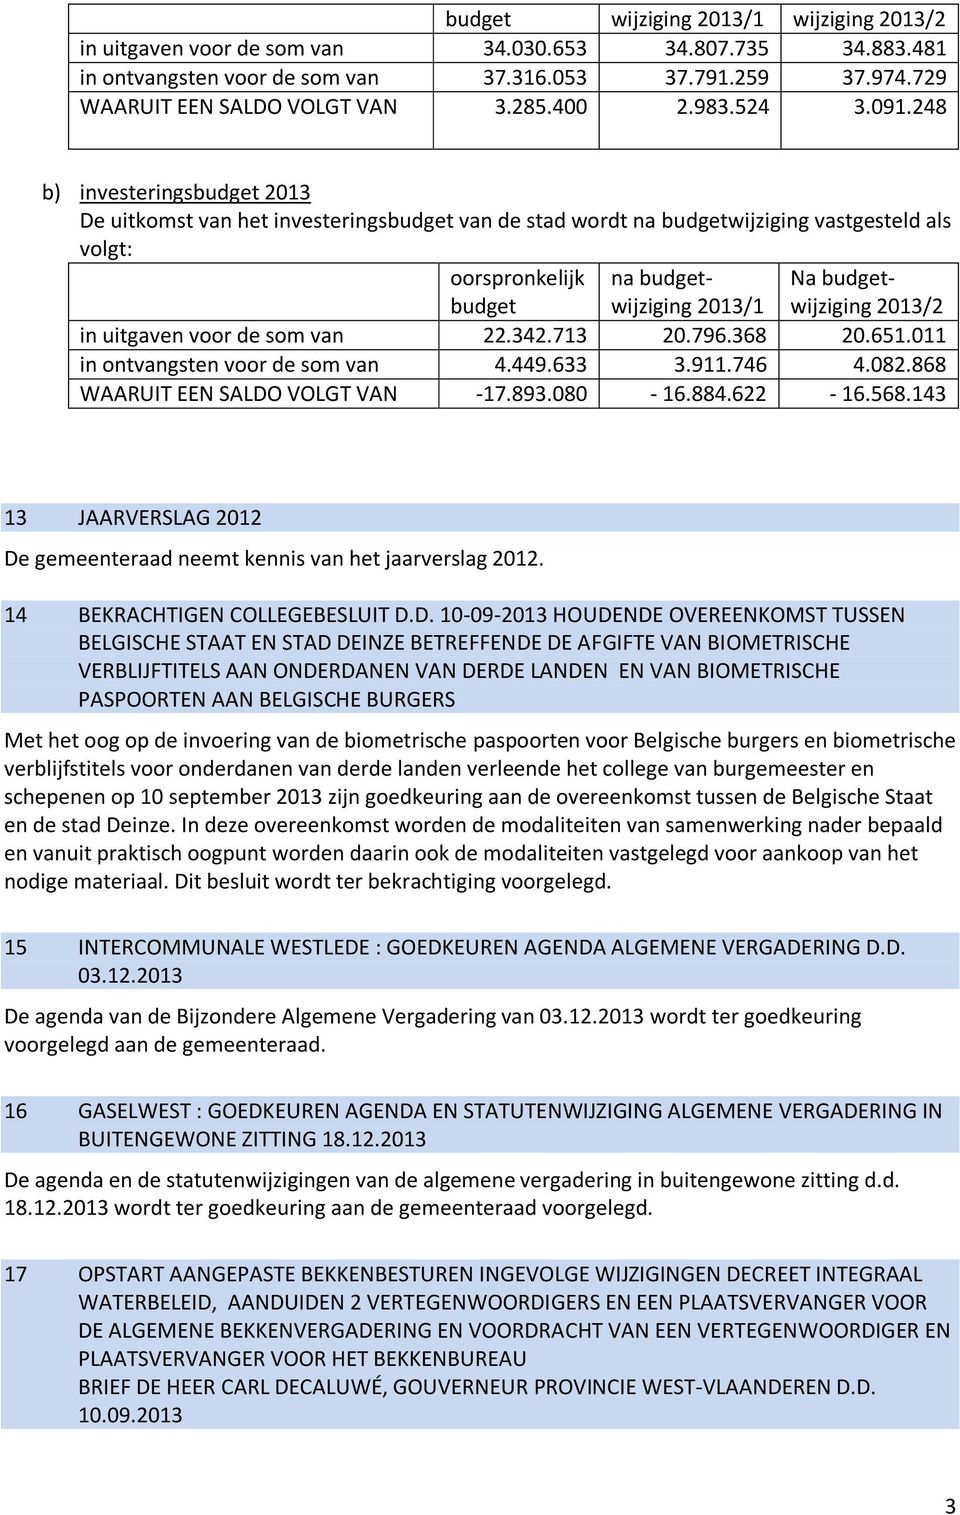 248 b) investeringsbudget 2013 De uitkomst van het investeringsbudget van de stad wordt na budgetwijziging vastgesteld als volgt: oorspronkelijk budget na budgetwijziging 2013/1 Na budgetwijziging